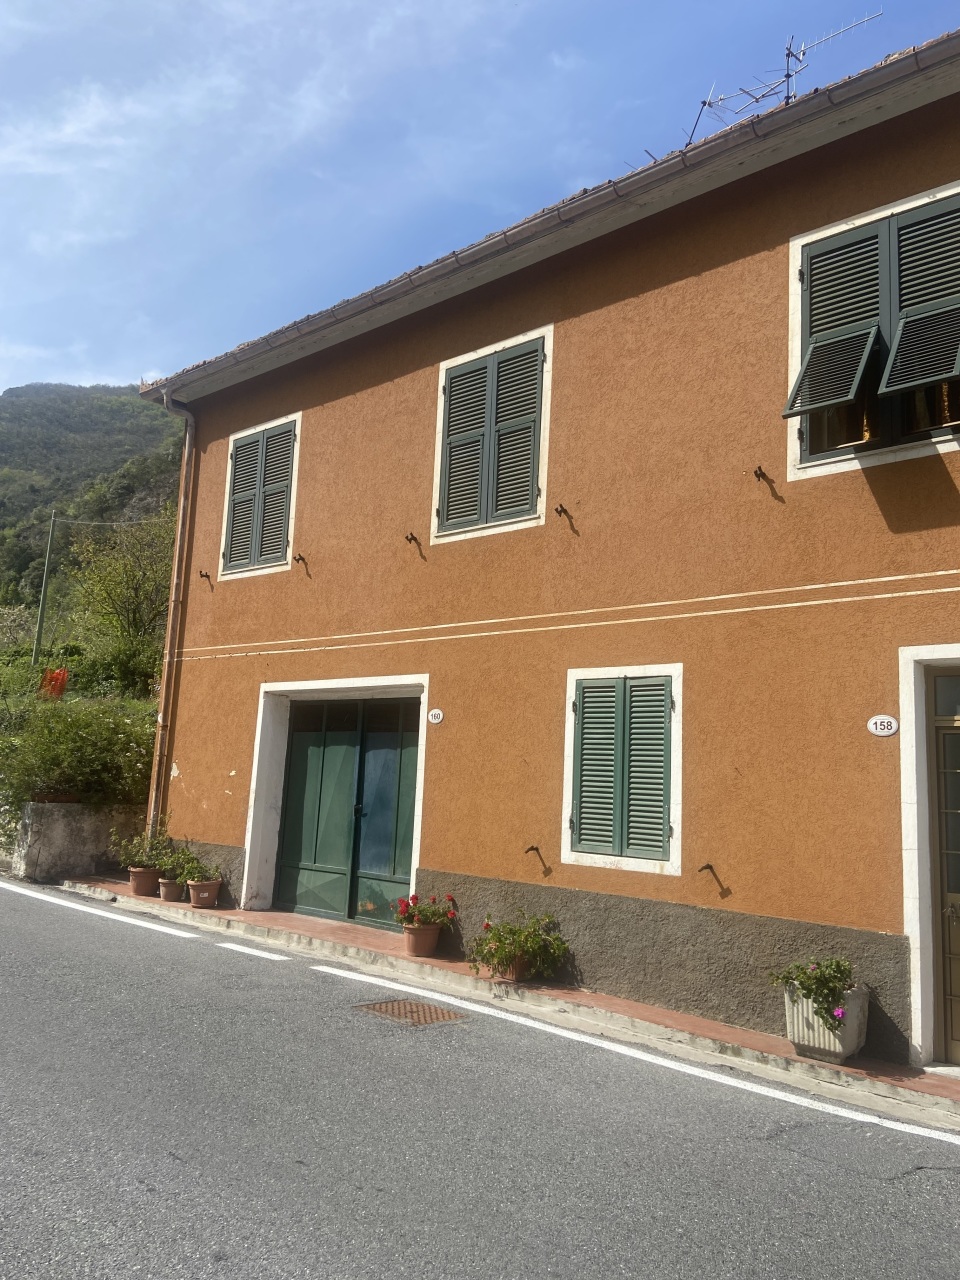 Appartamento in vendita a Castelbianco, 3 locali, prezzo € 30.000 | PortaleAgenzieImmobiliari.it